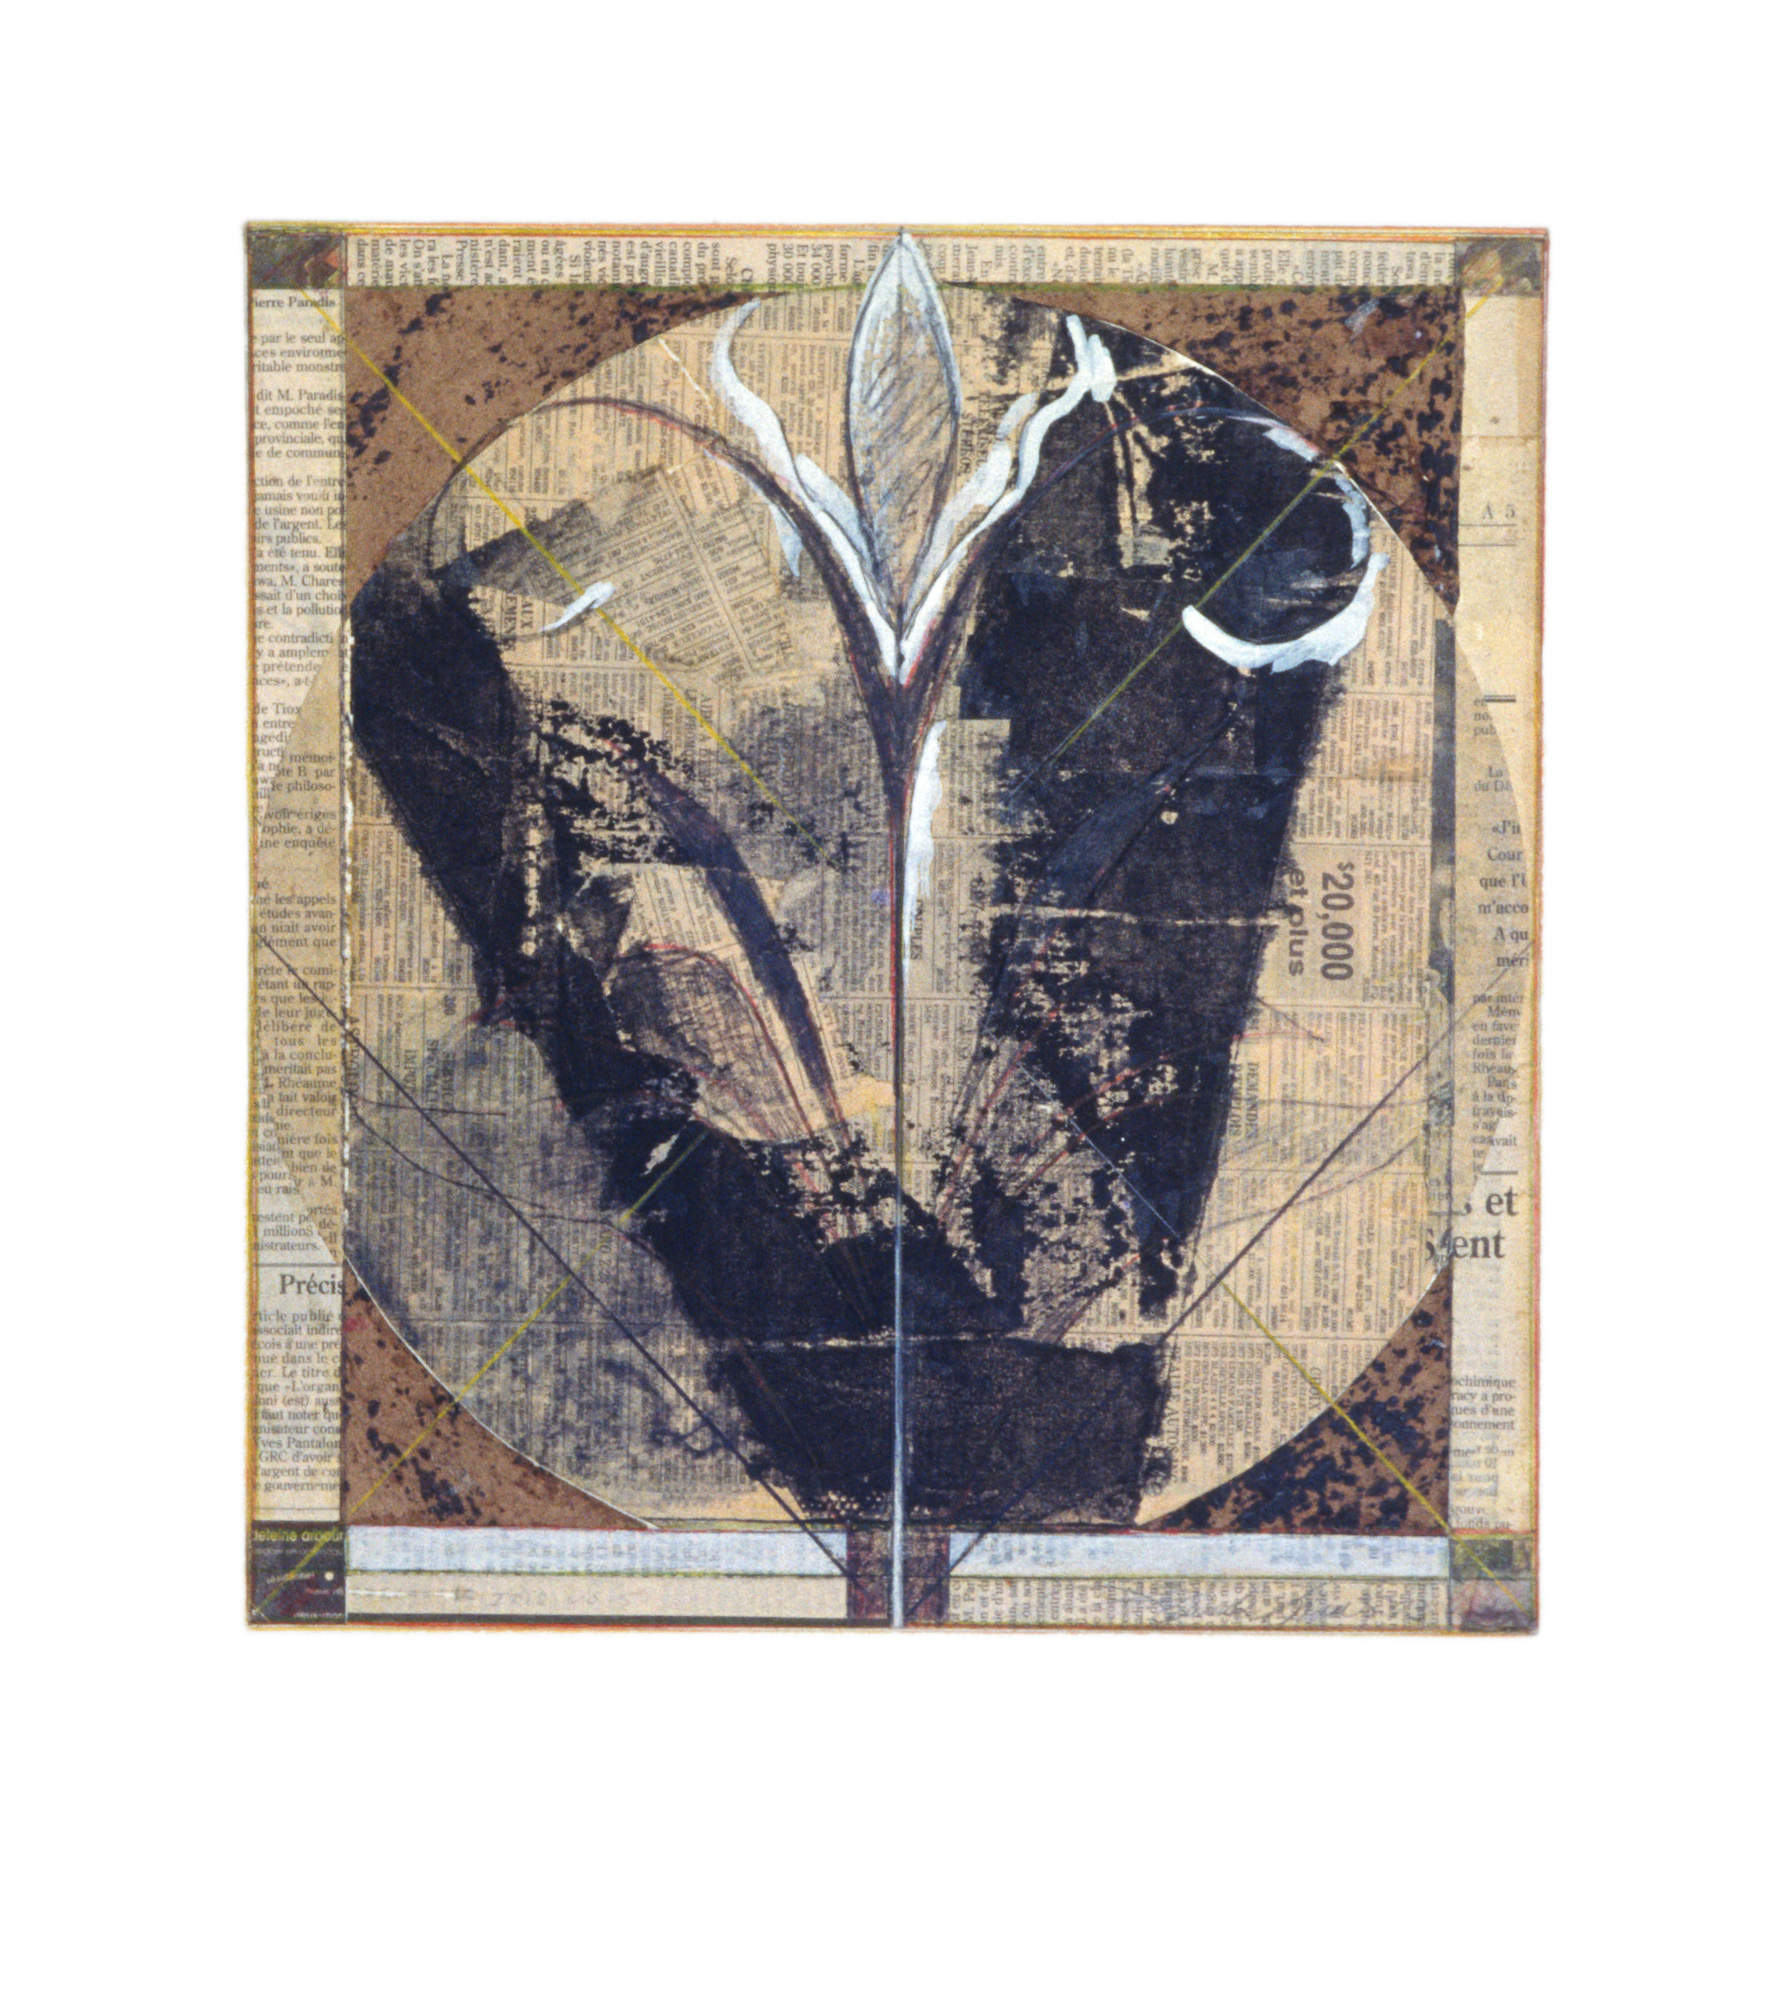 Iris No 5, 1993. Sérigraphie, gouache et crayon sur papier imprimé collé sur papier fort, 46 x 41 cm.